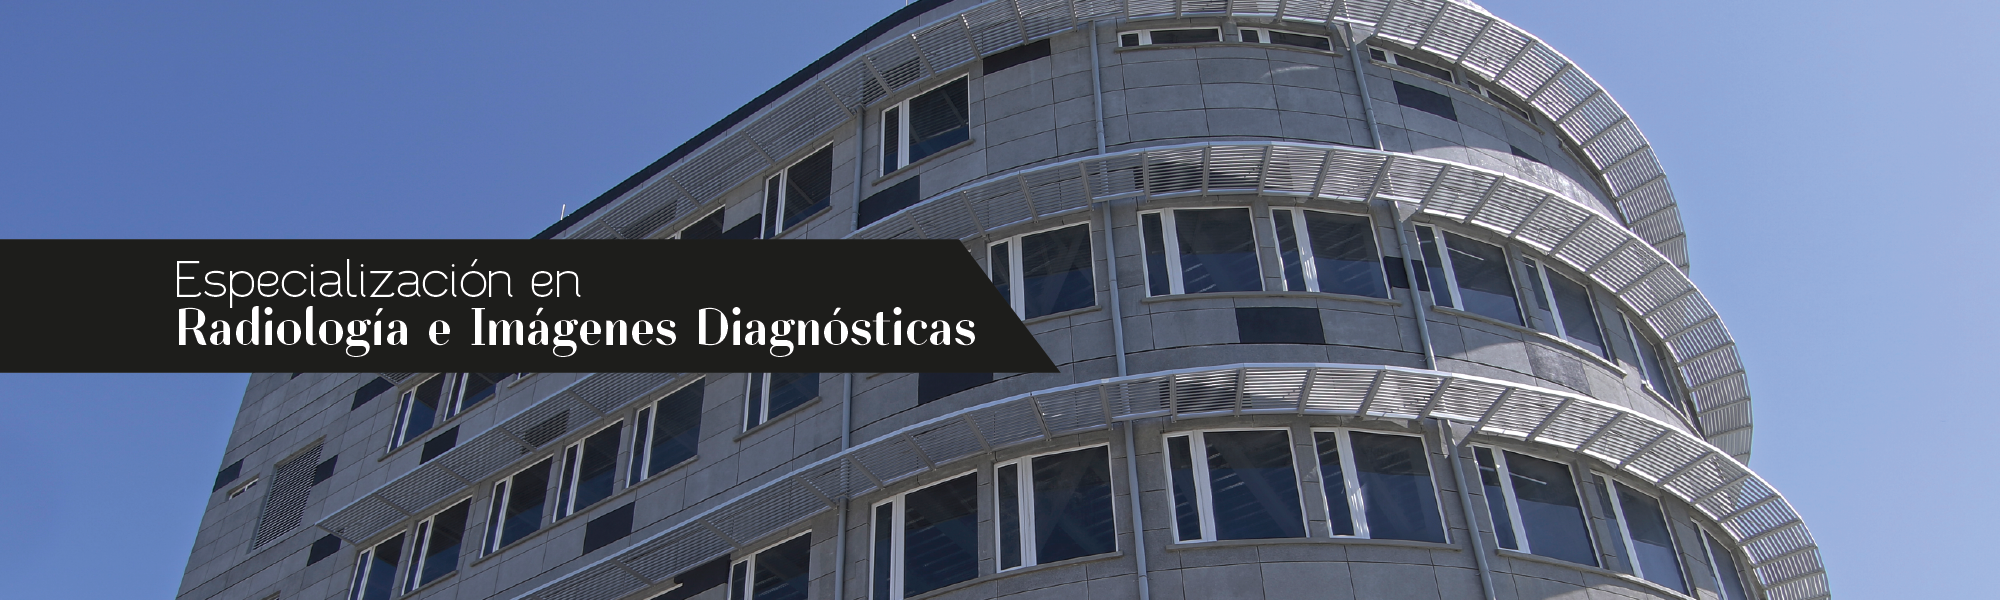 Especialización en Radiología e Imágenes Diagnósticas